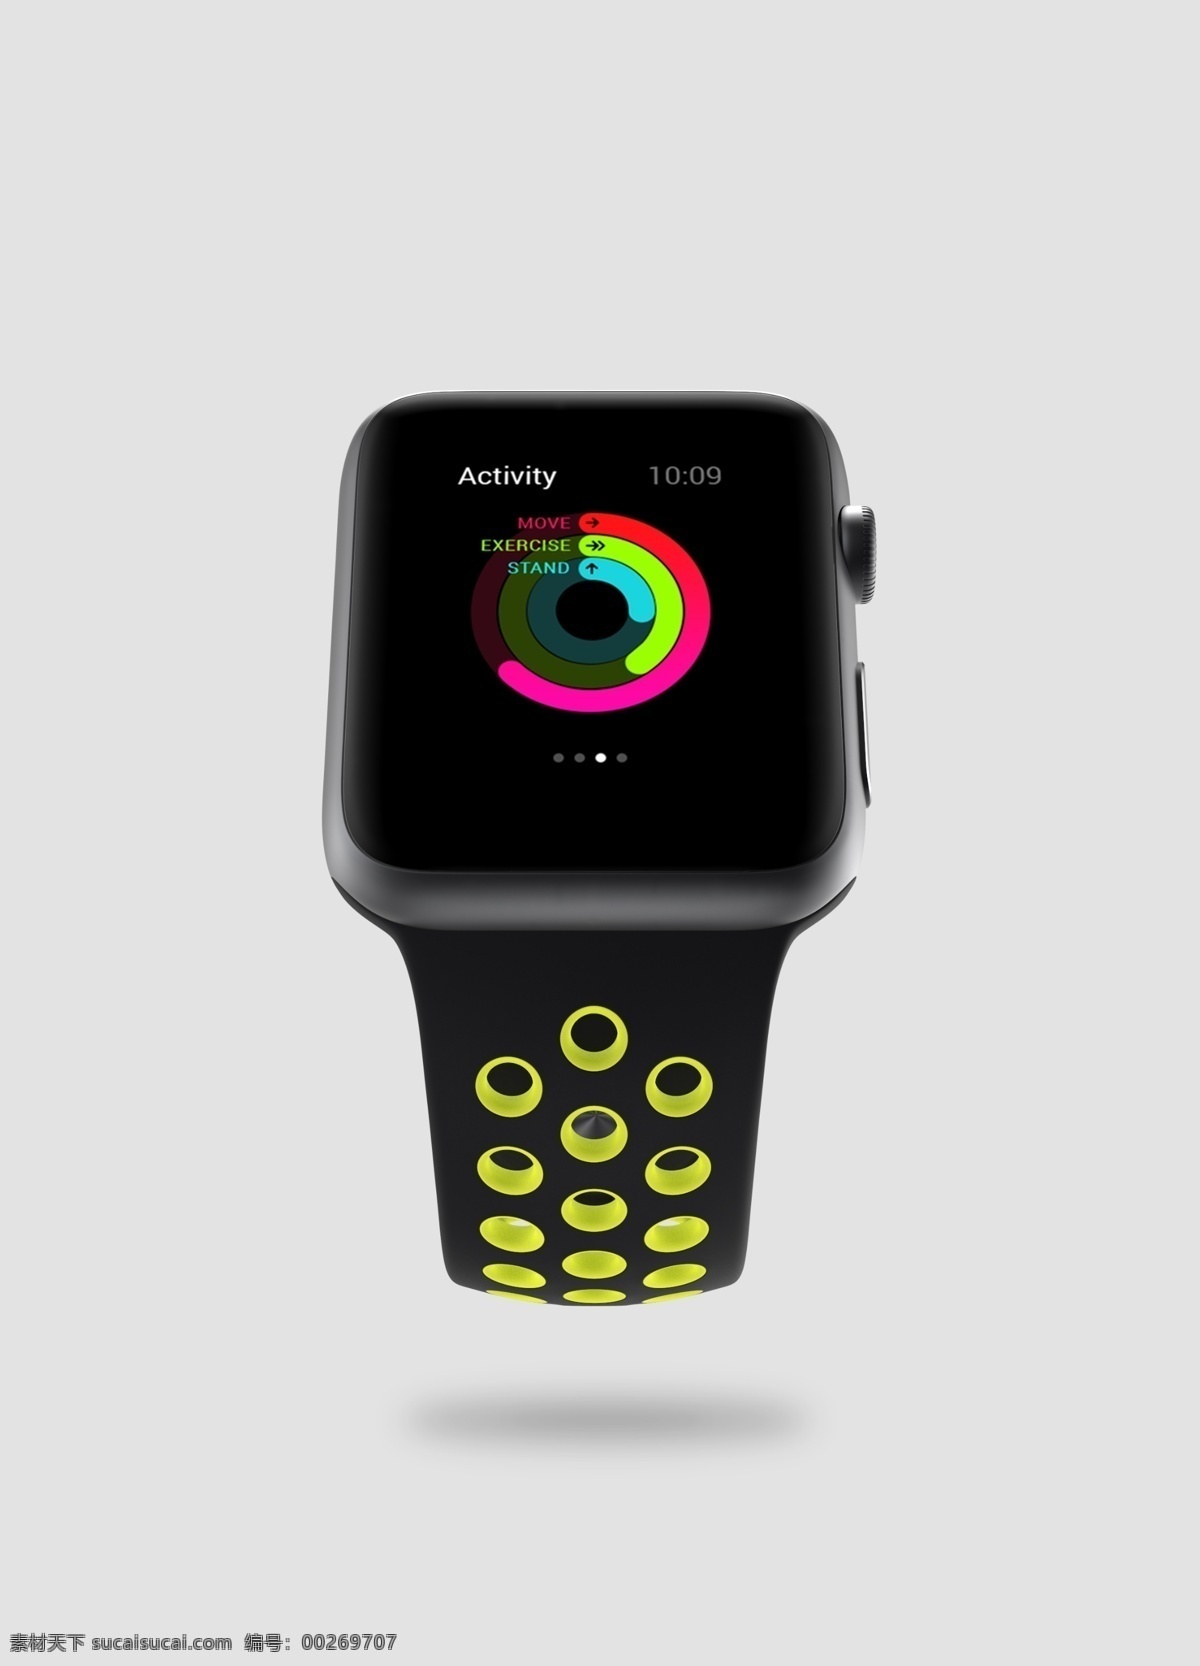 苹果 手表 产品展示 样机 apple watch 电子设备样机 样机素材 手表样机 样机展示 苹果手表 电子手表